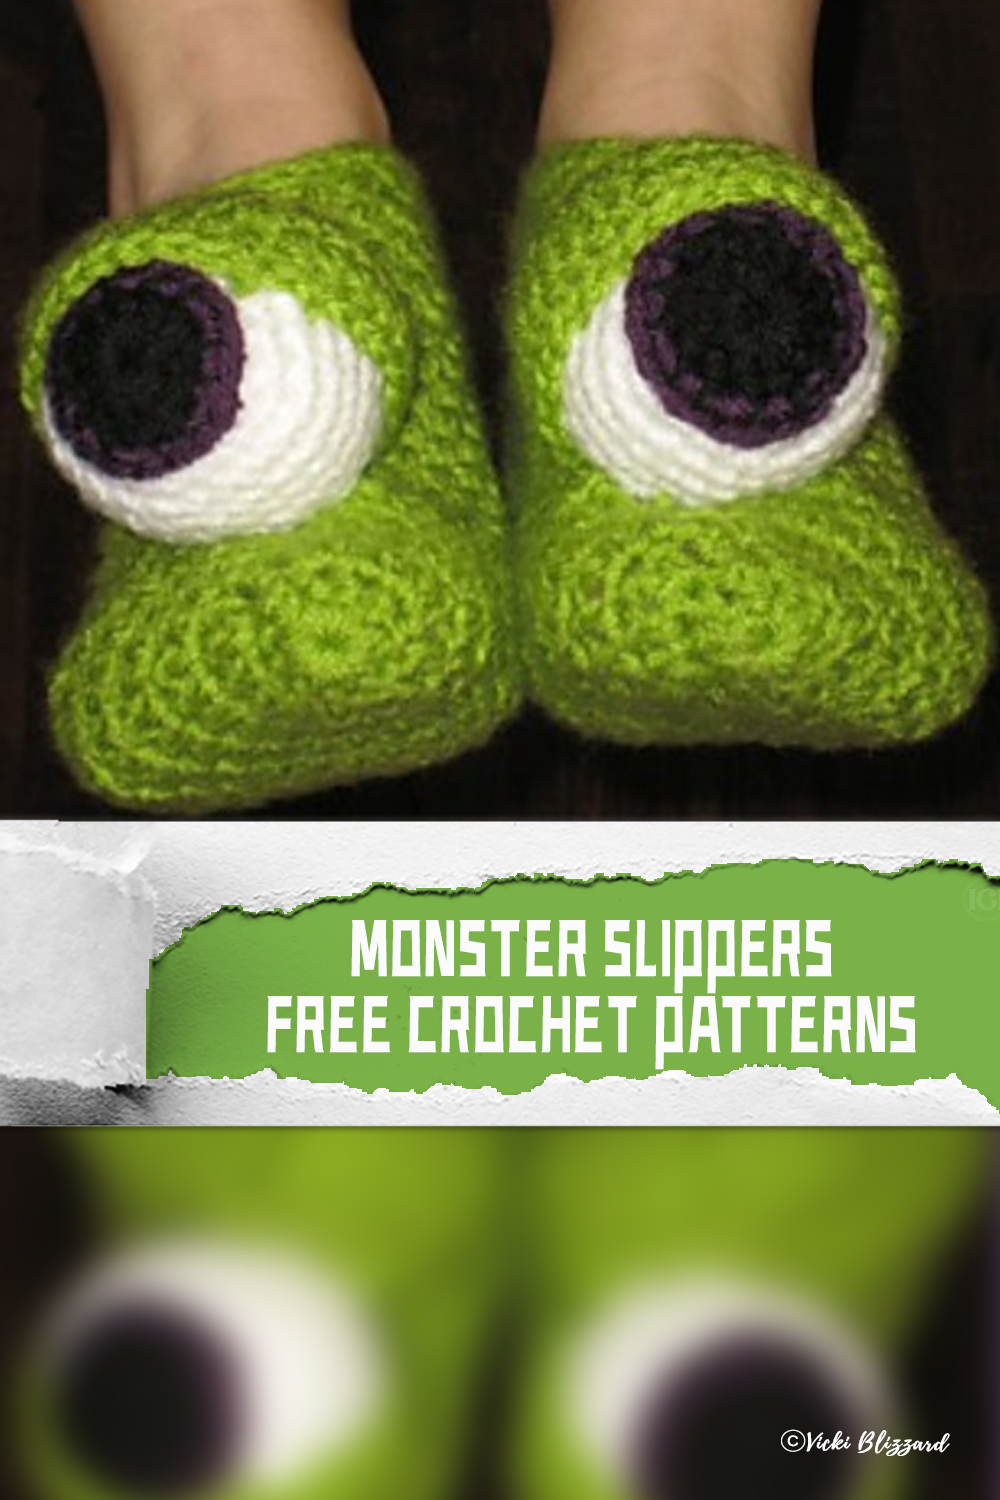 FREE Monster Slippers Crochet Patterns